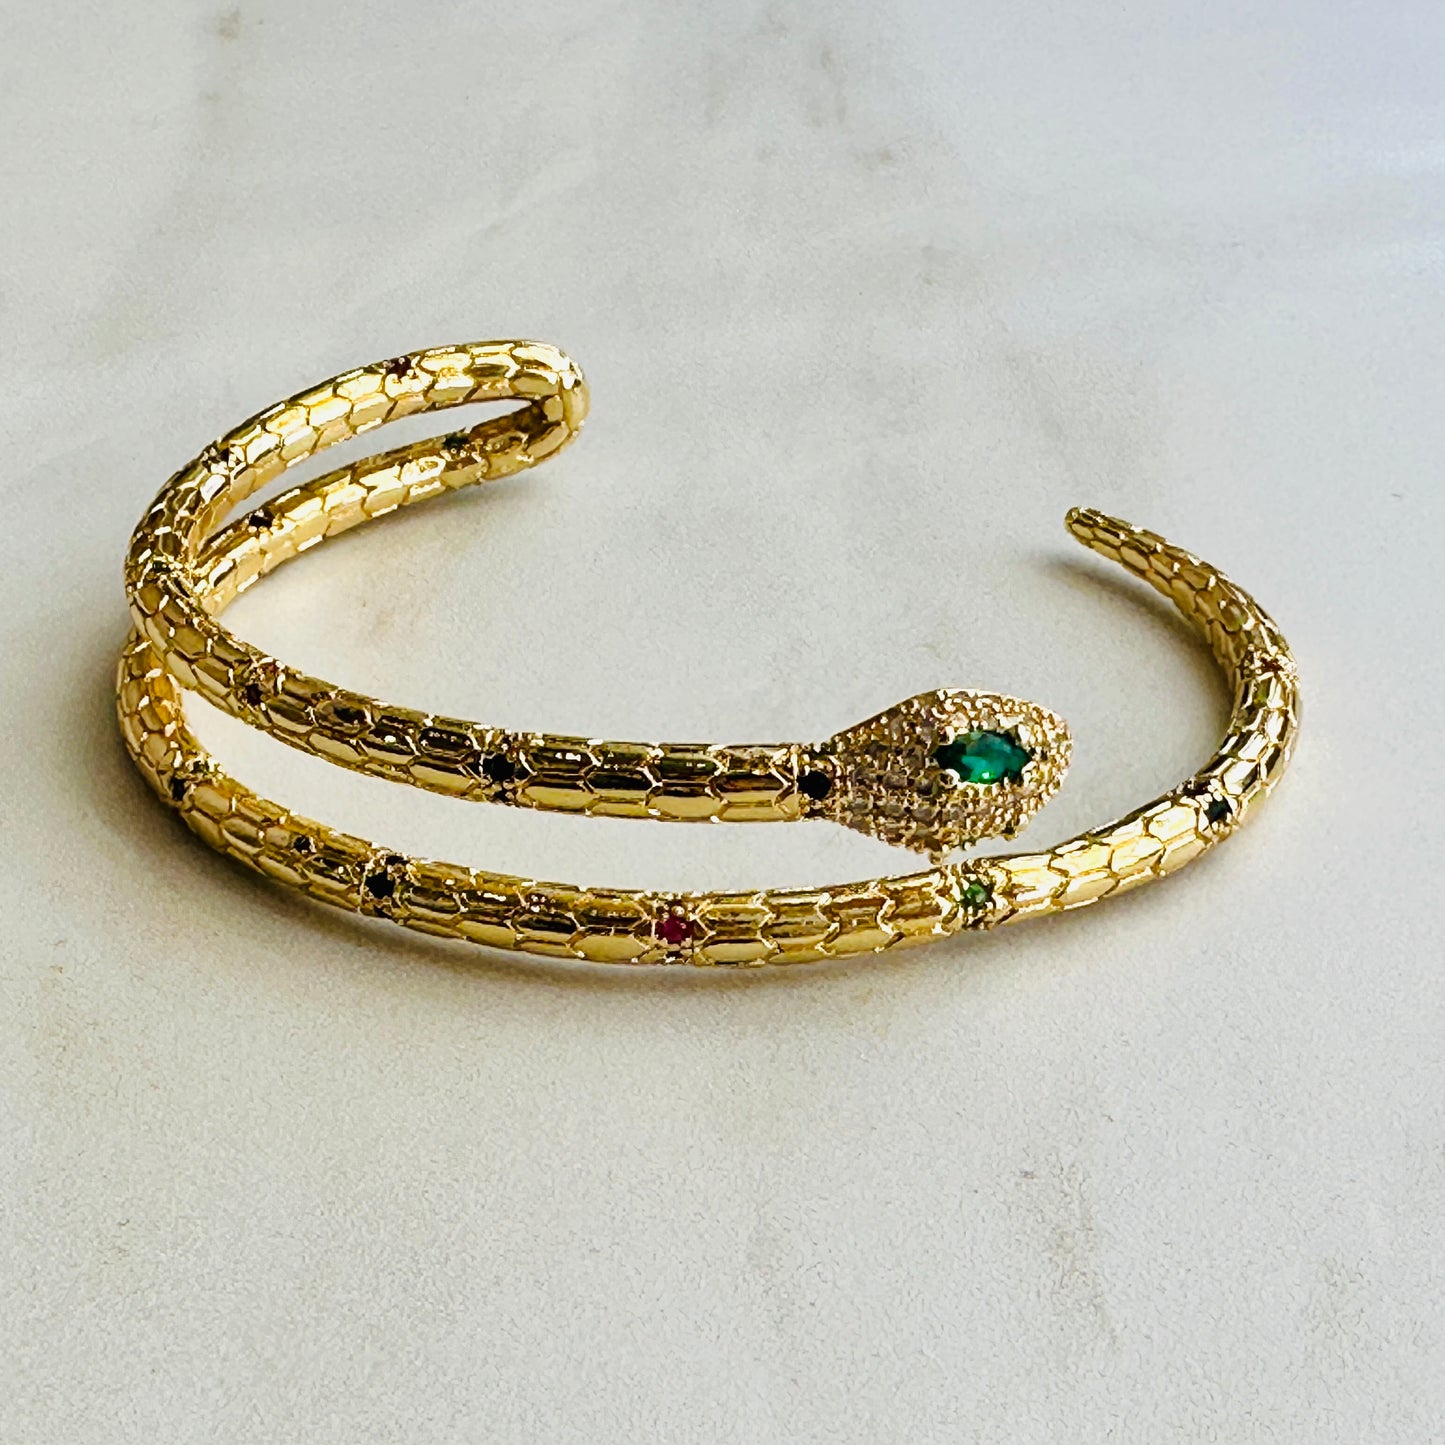 Bracelet - 18KG Gold Filled Snake Bracelets NEW